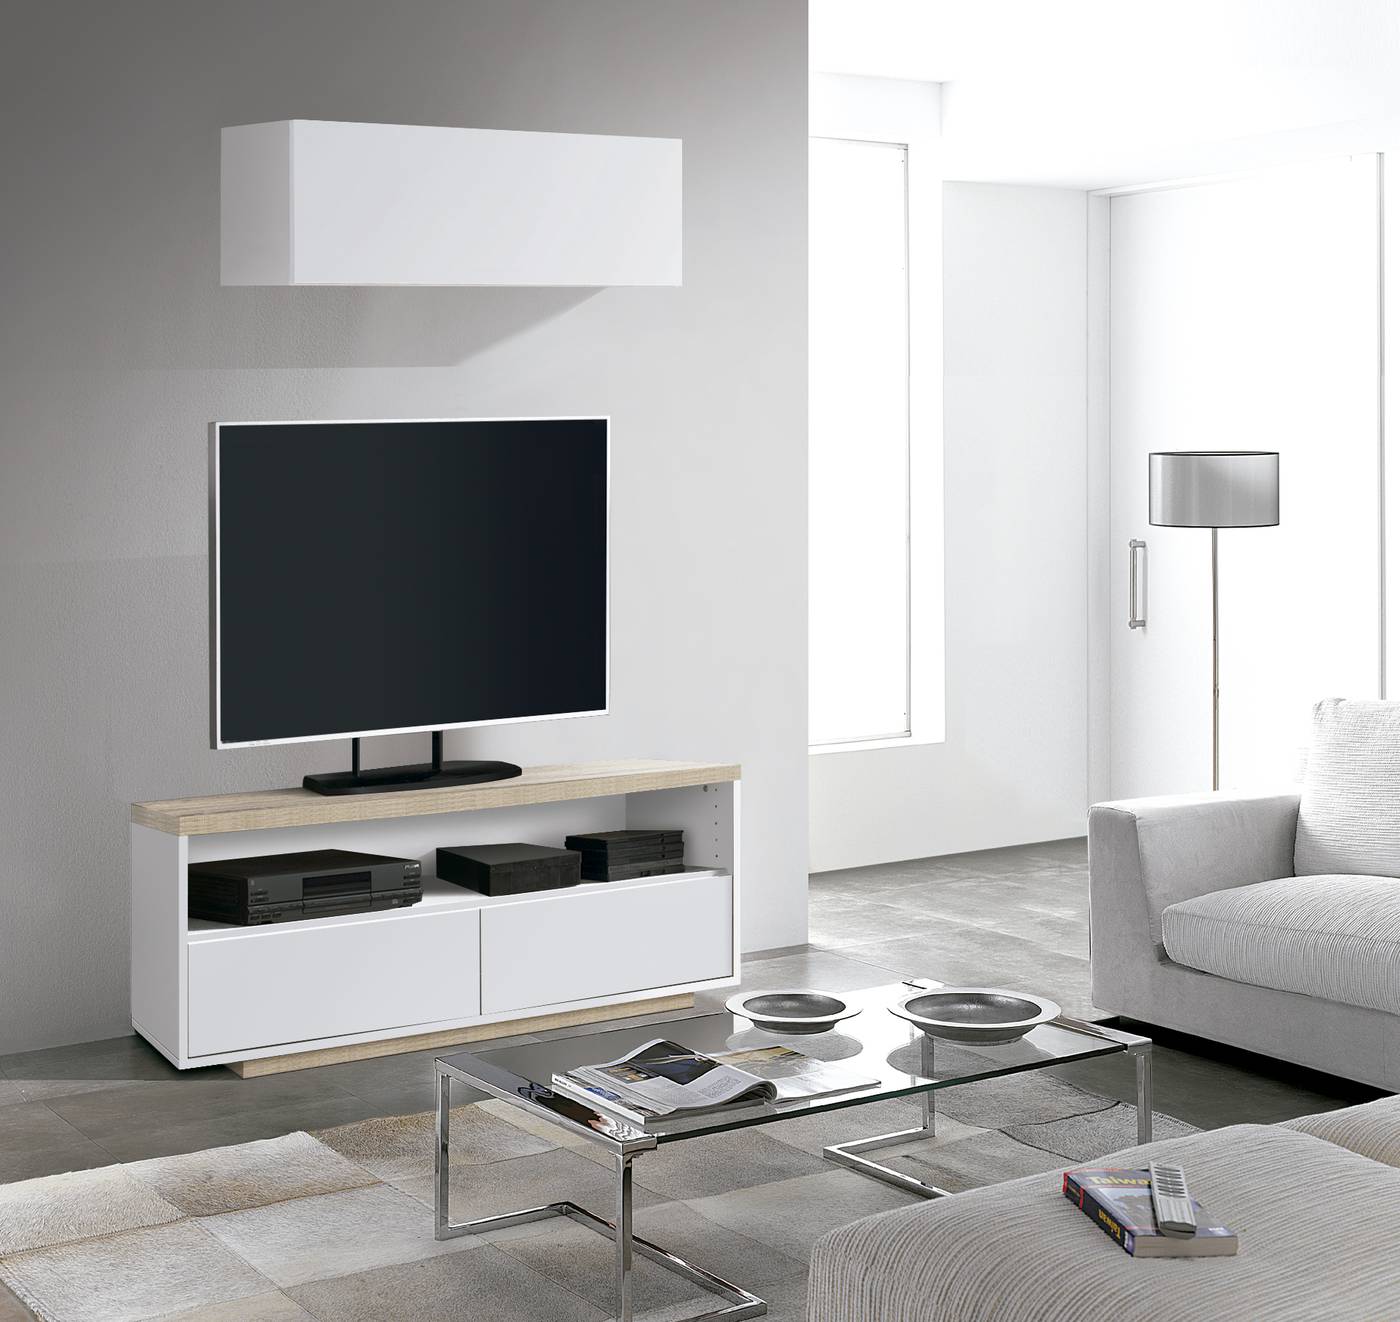 Mueble de TV de 2 cajones y un hueco. Acabado color Roble cambrian o combinado con Blanco